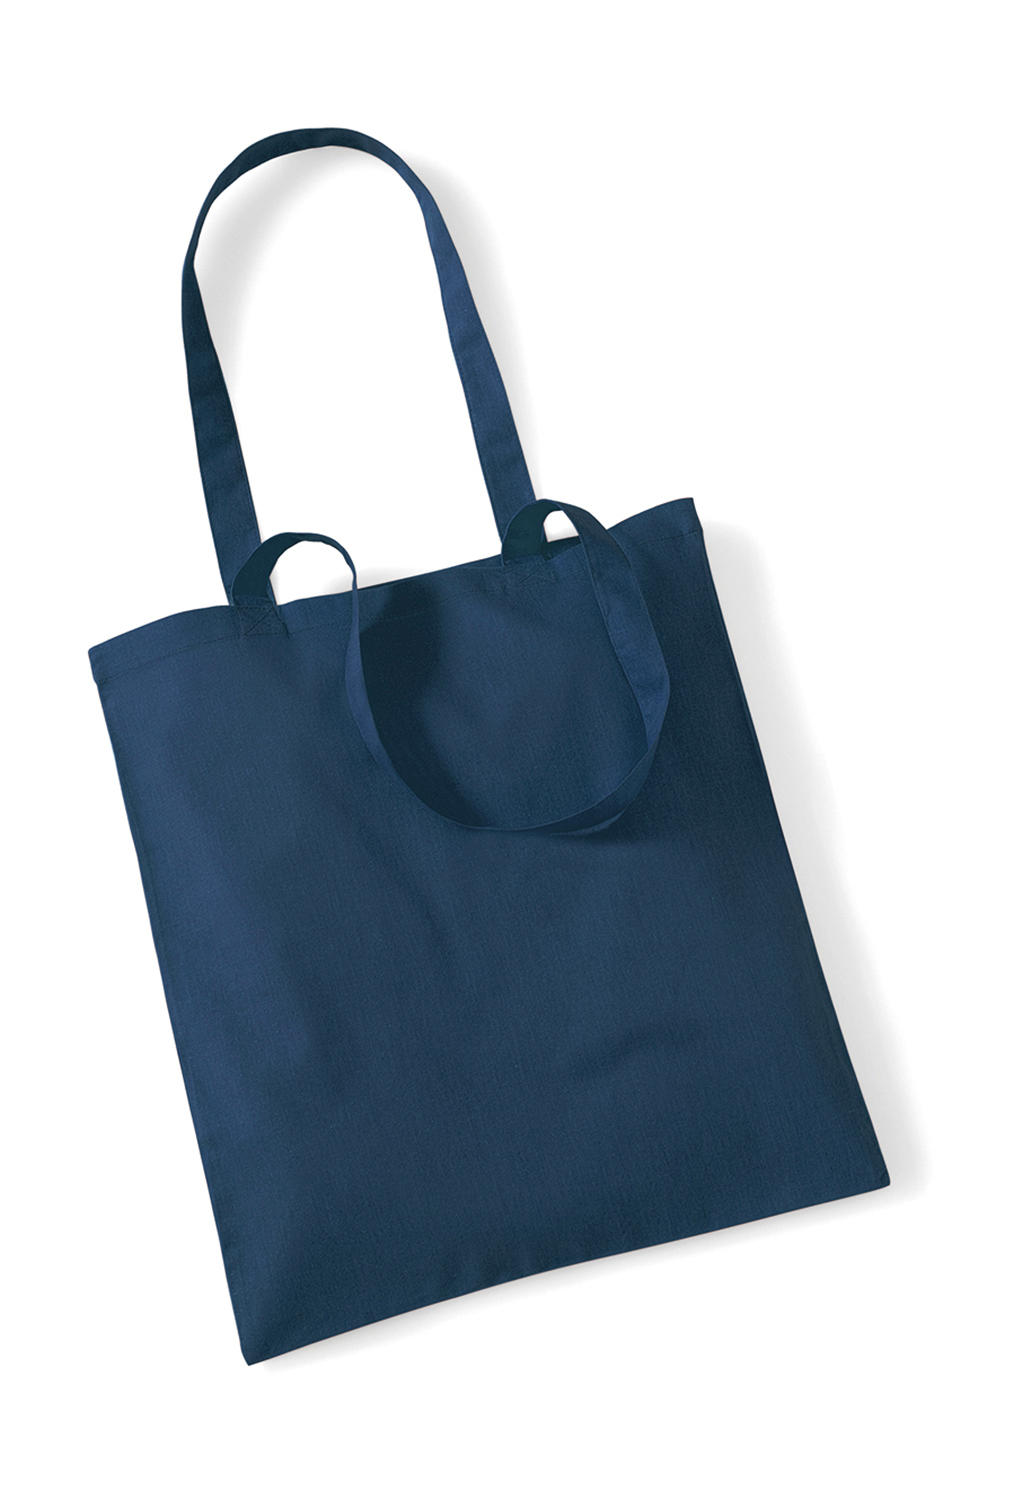  Bag for Life - Long Handles in Farbe Petrol